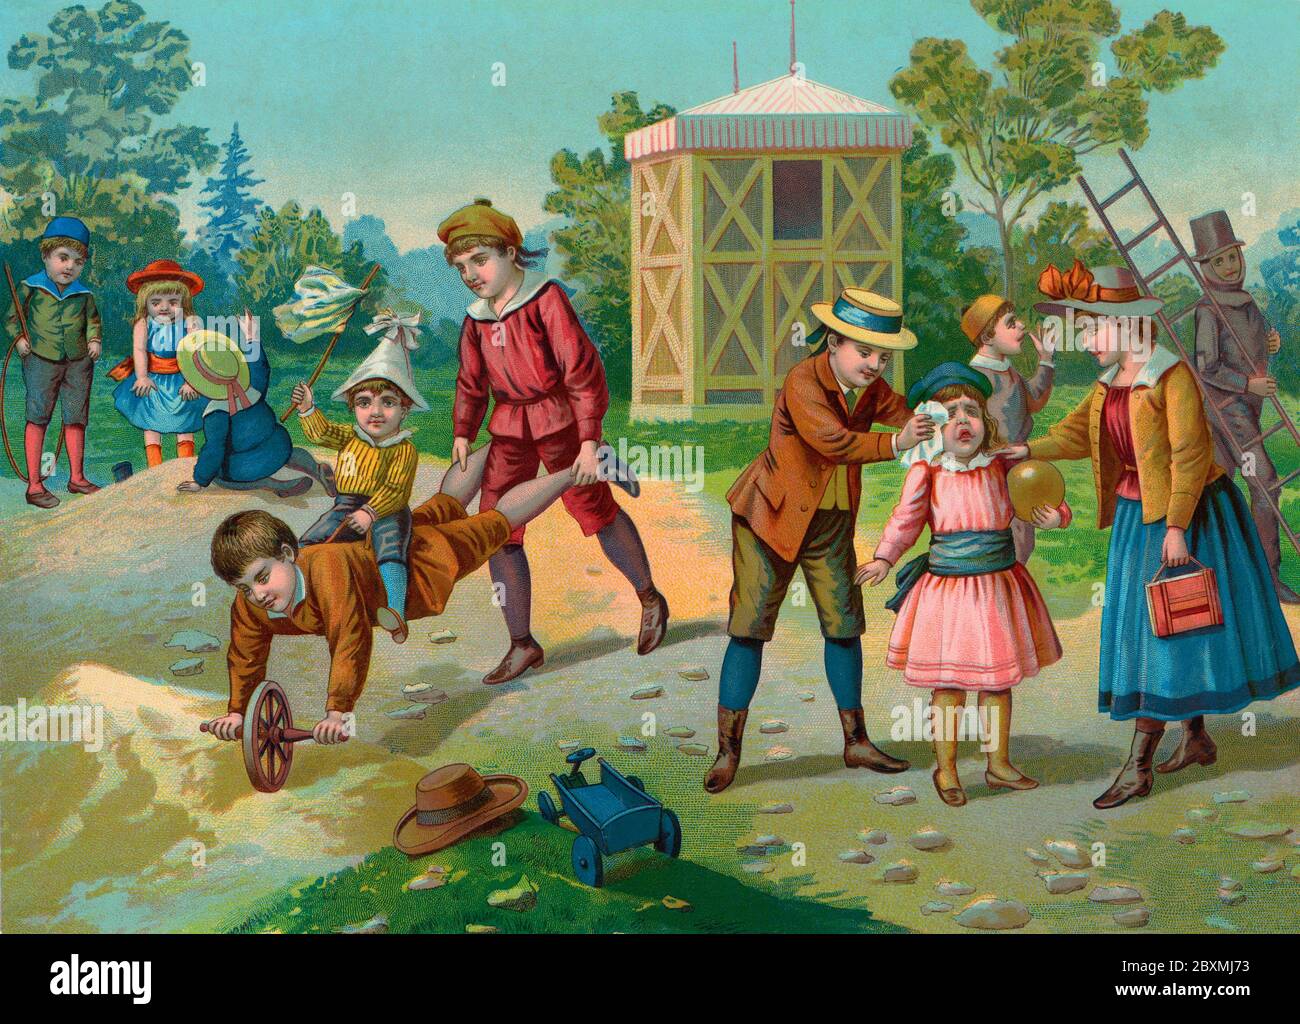 Alte Abbildung. Auf dieser britischen Illustration des 19. Jahrhunderts spielen Kinder draußen mit typischen Spielsachen der Zeit. Eine fröhliche Sommerszene. Stockfoto